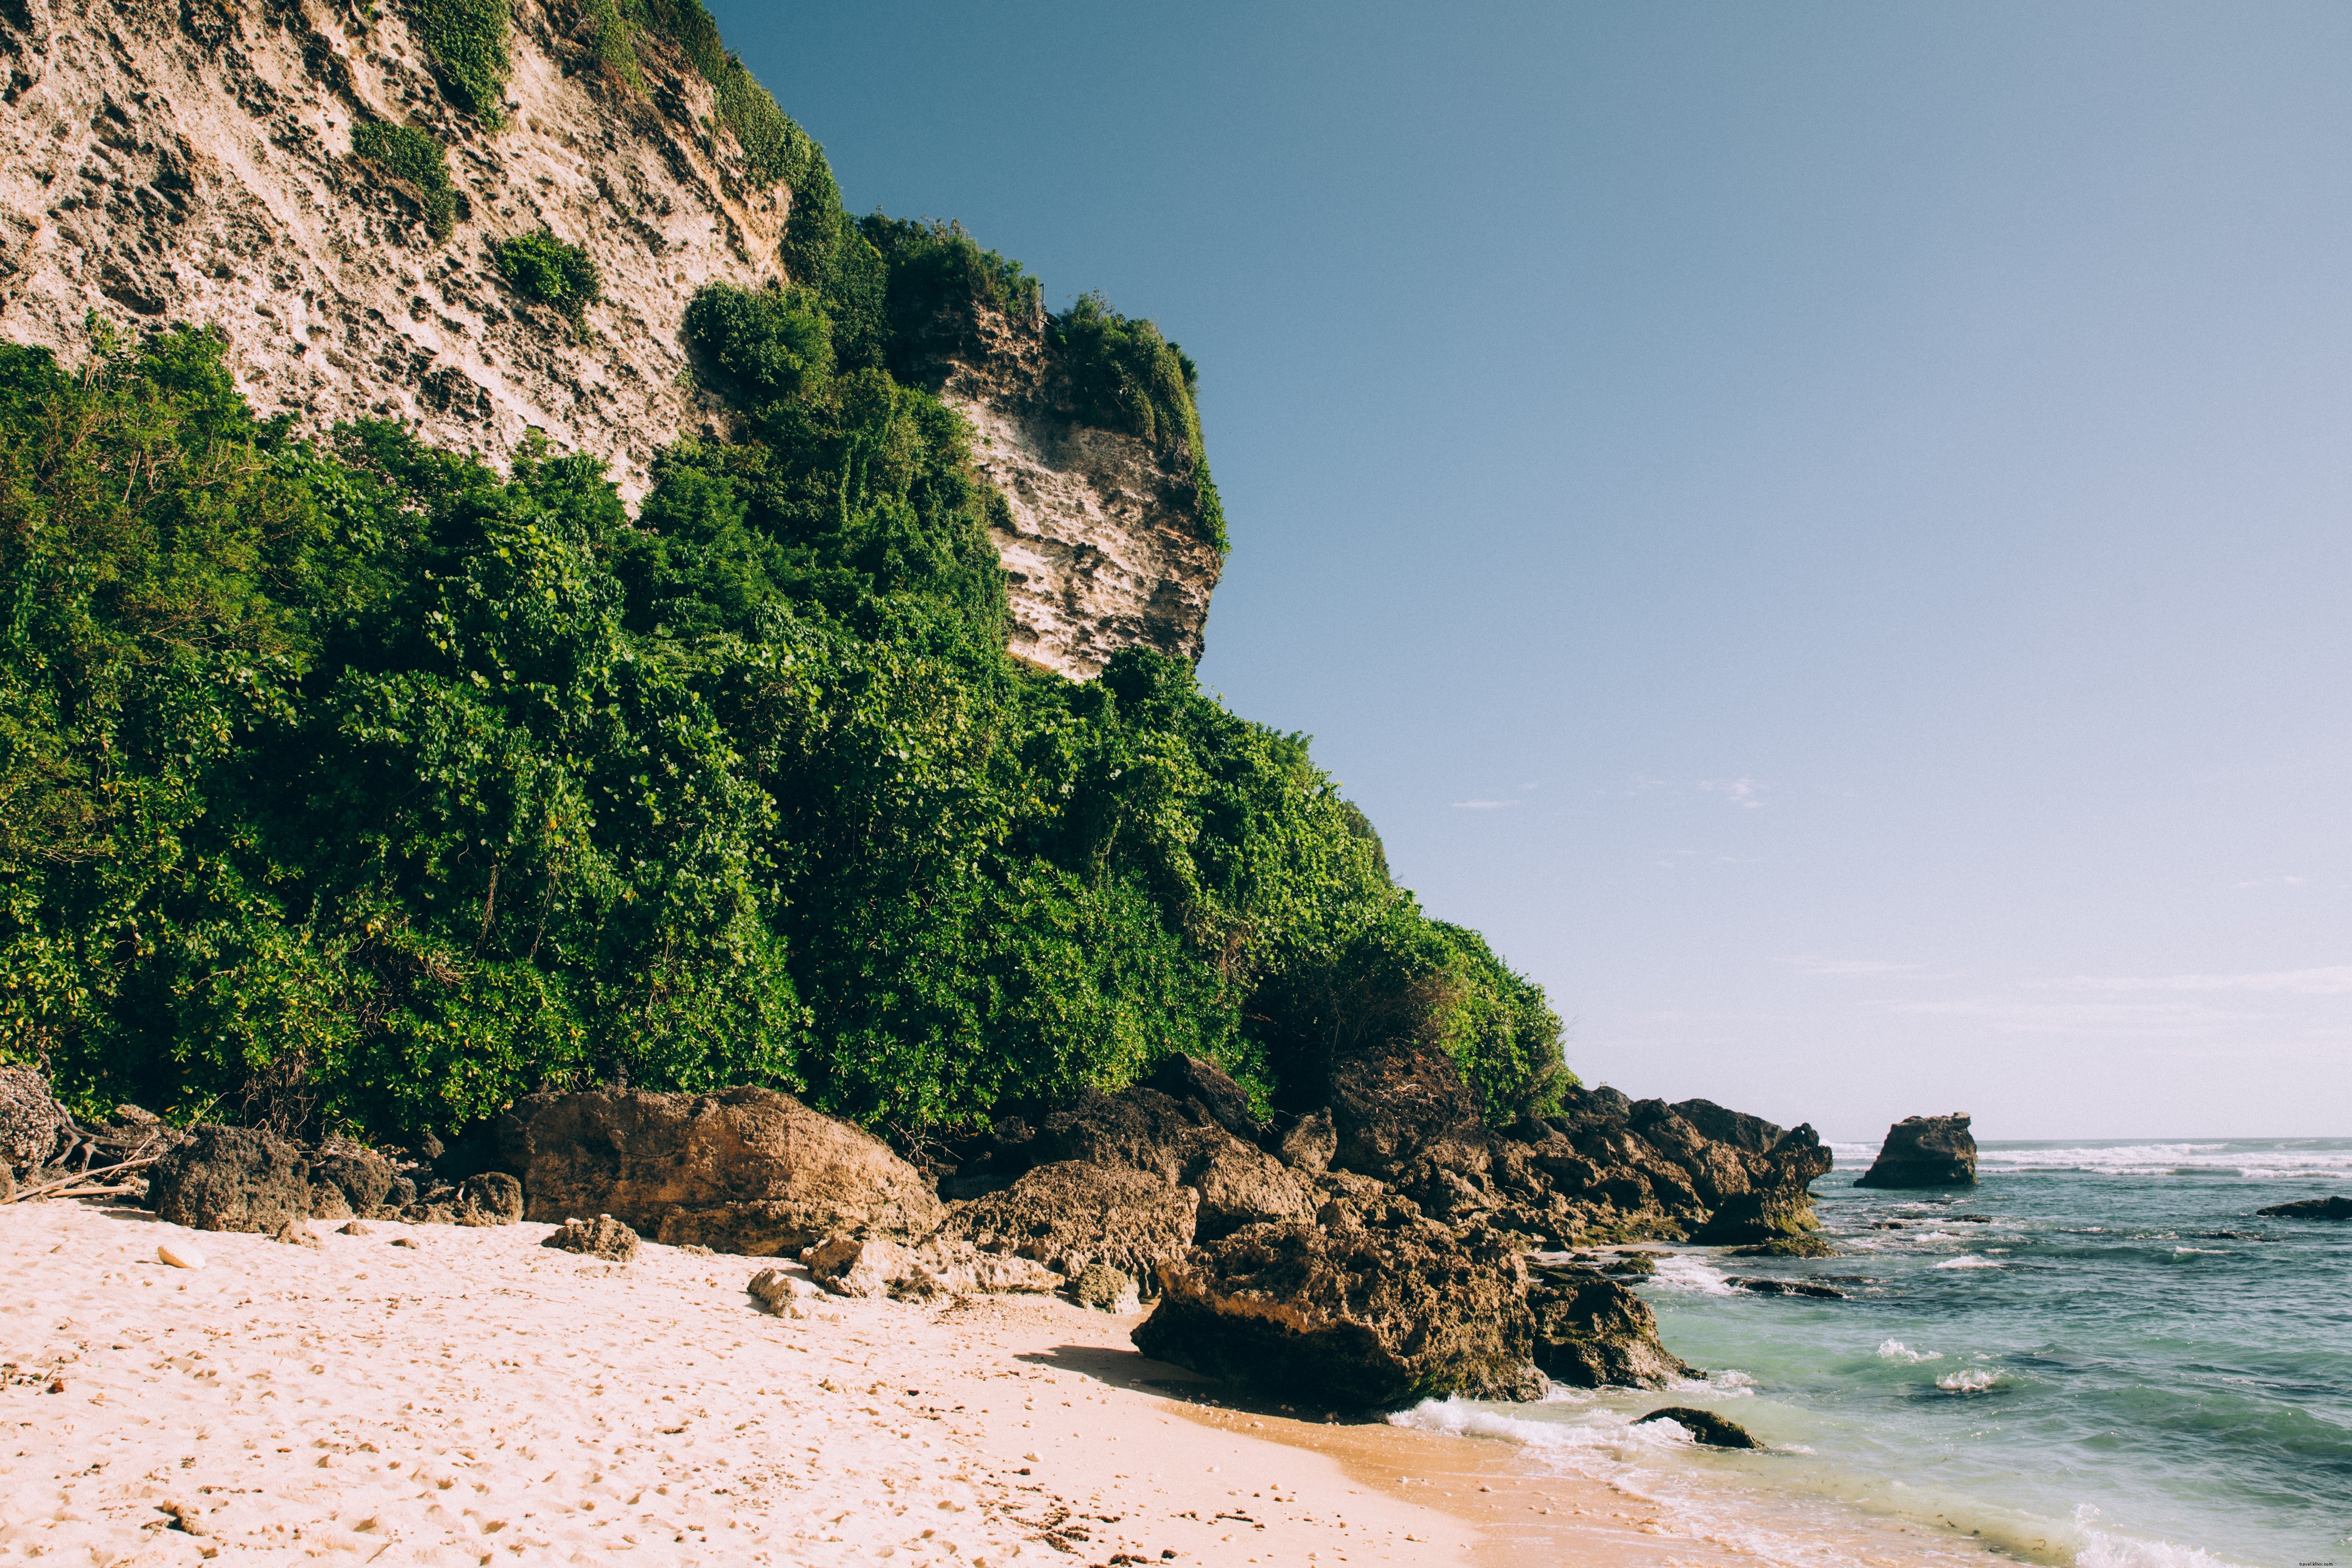 Spiaggia di sabbia circondata da scogliere rocciose e giungla foto